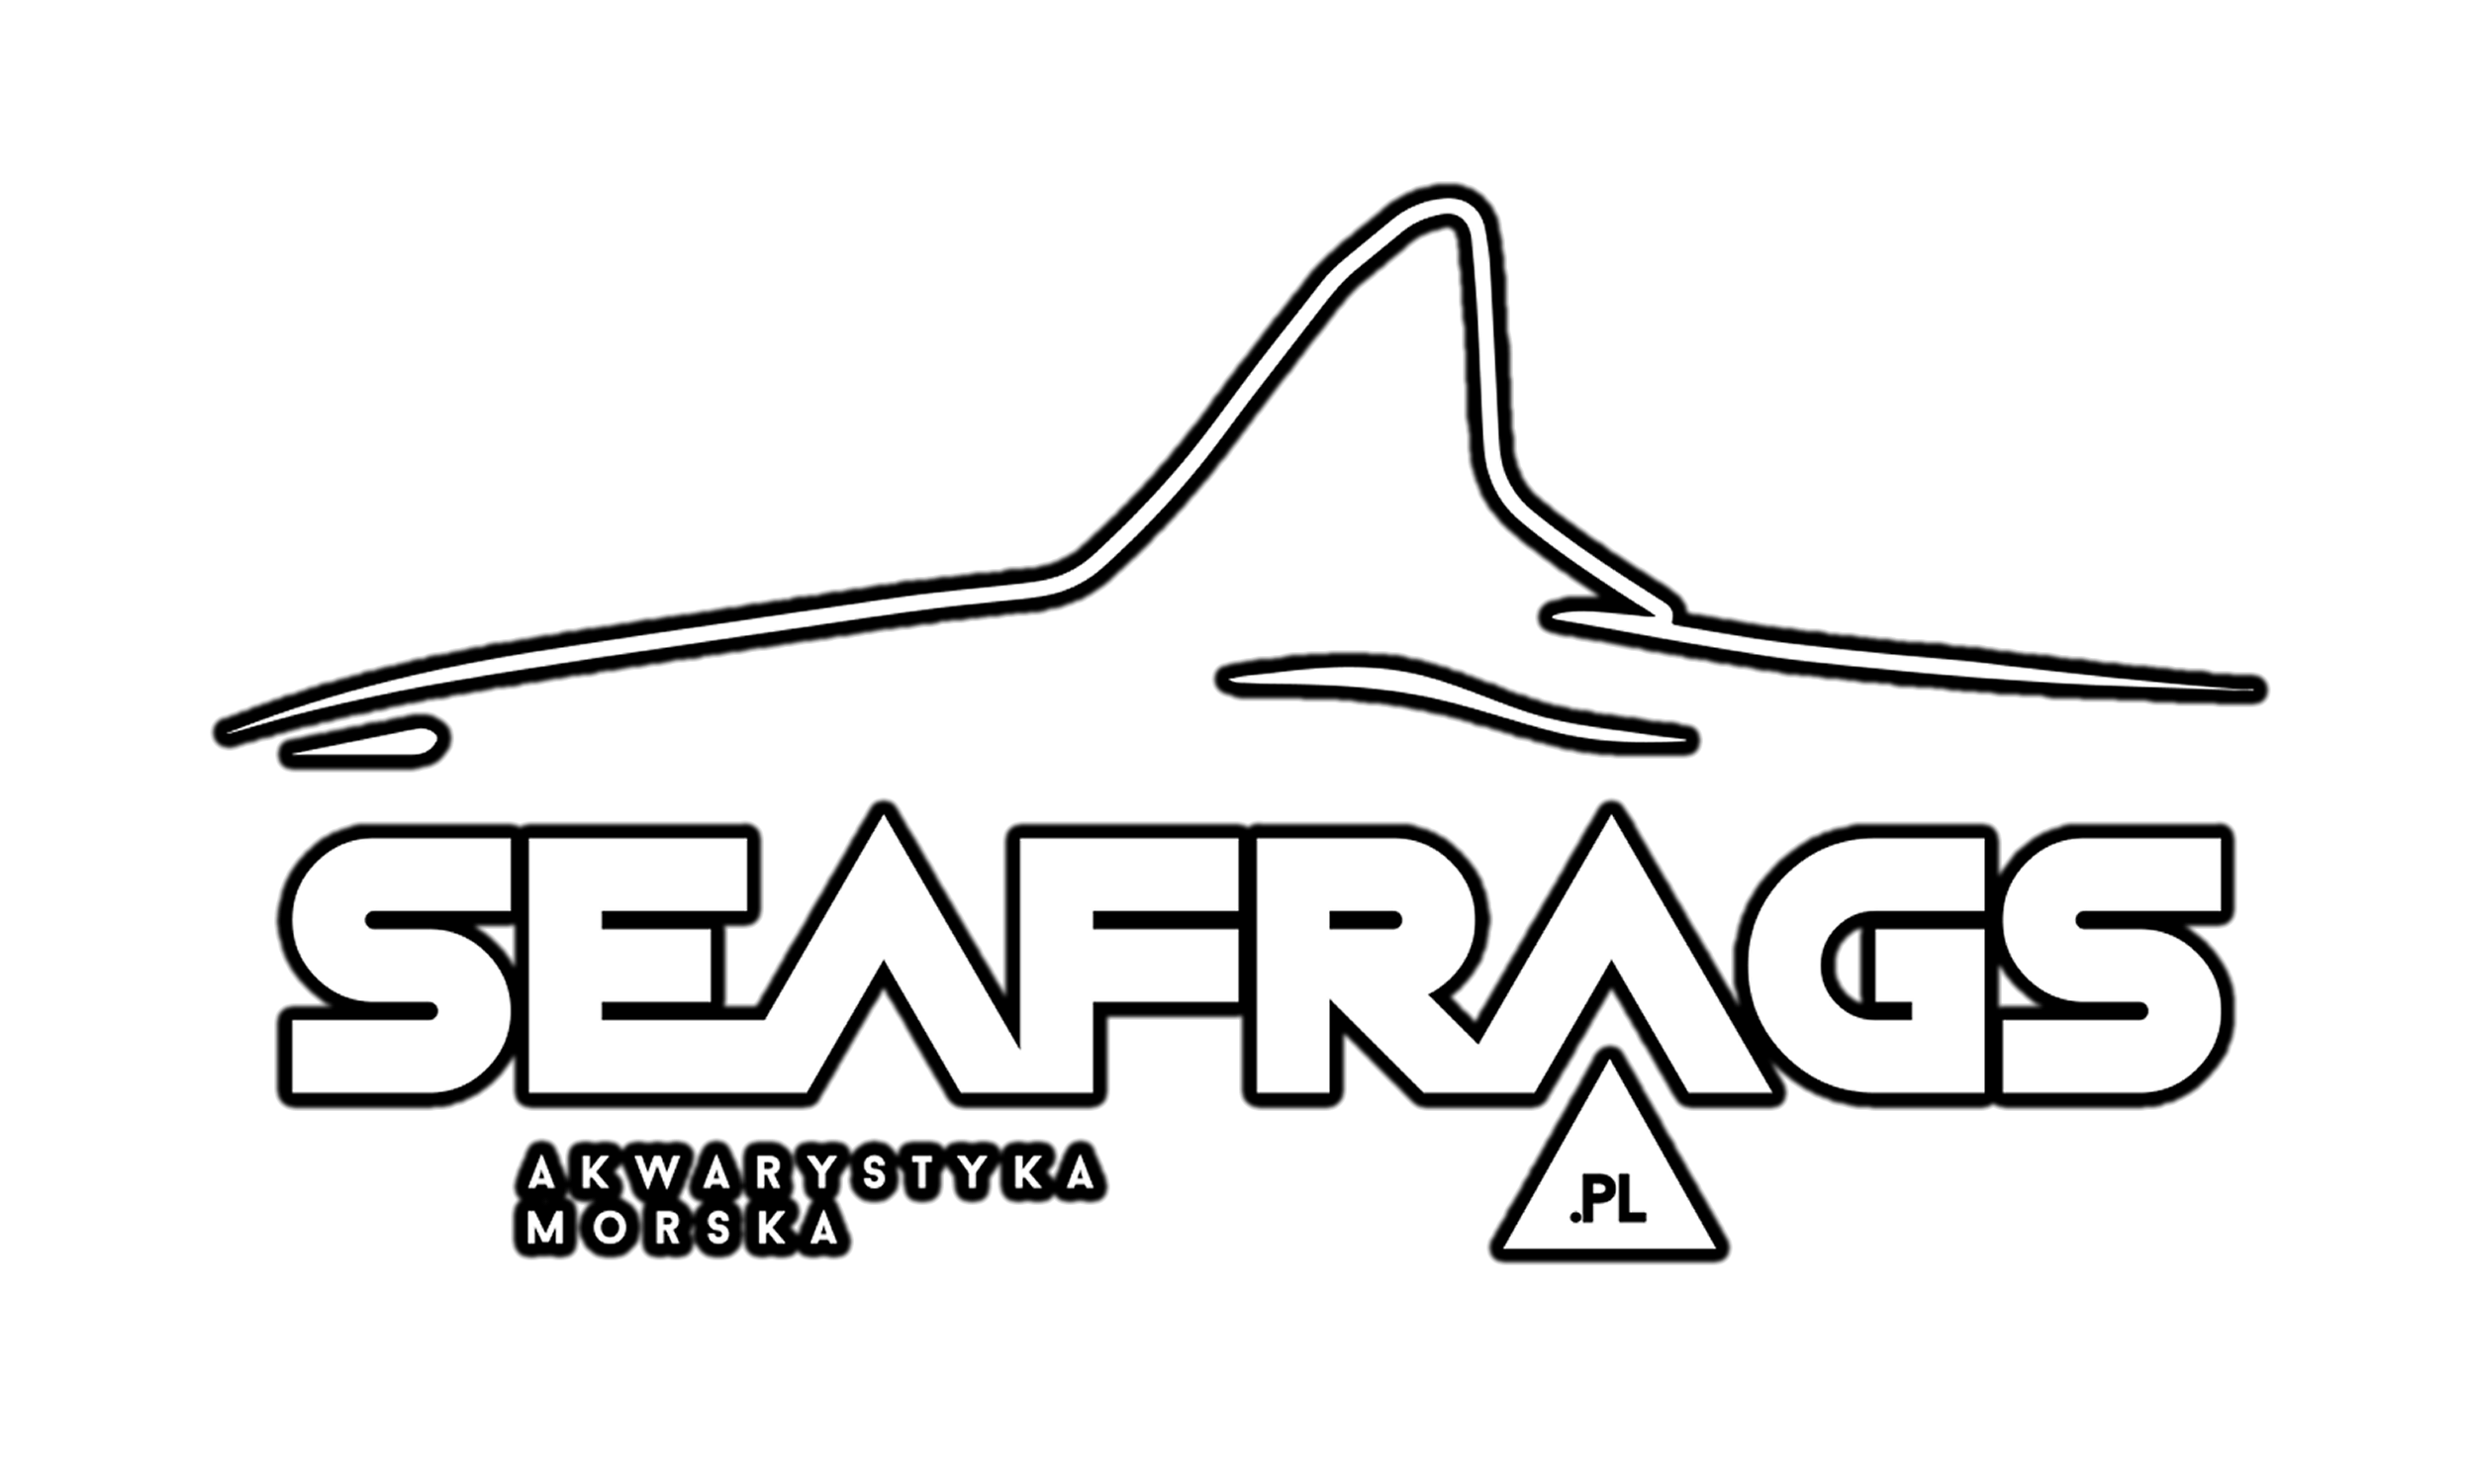 Seafrags Akwarystyka